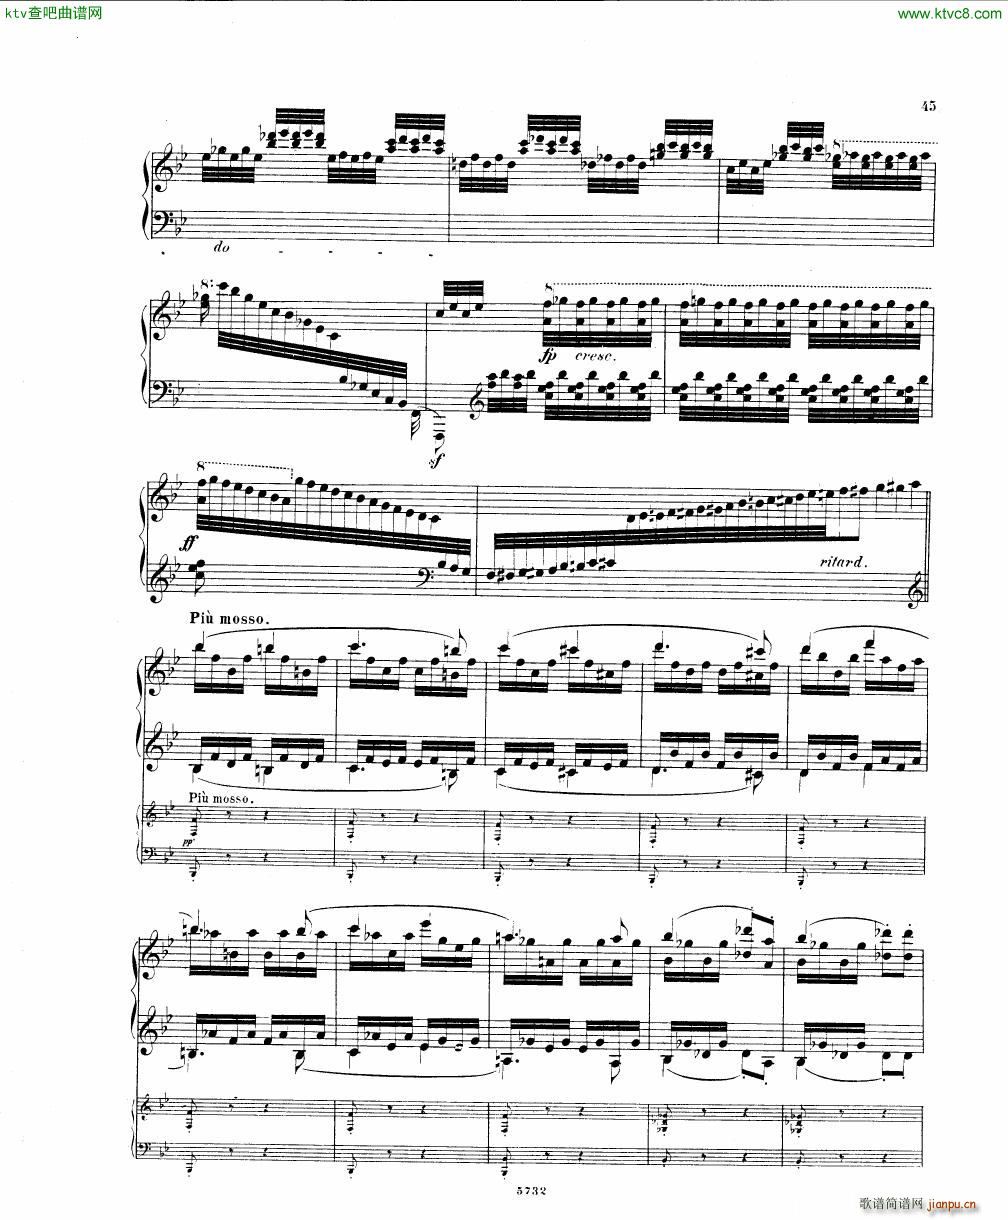 Fuchs Piano concerto Op 27 I()43